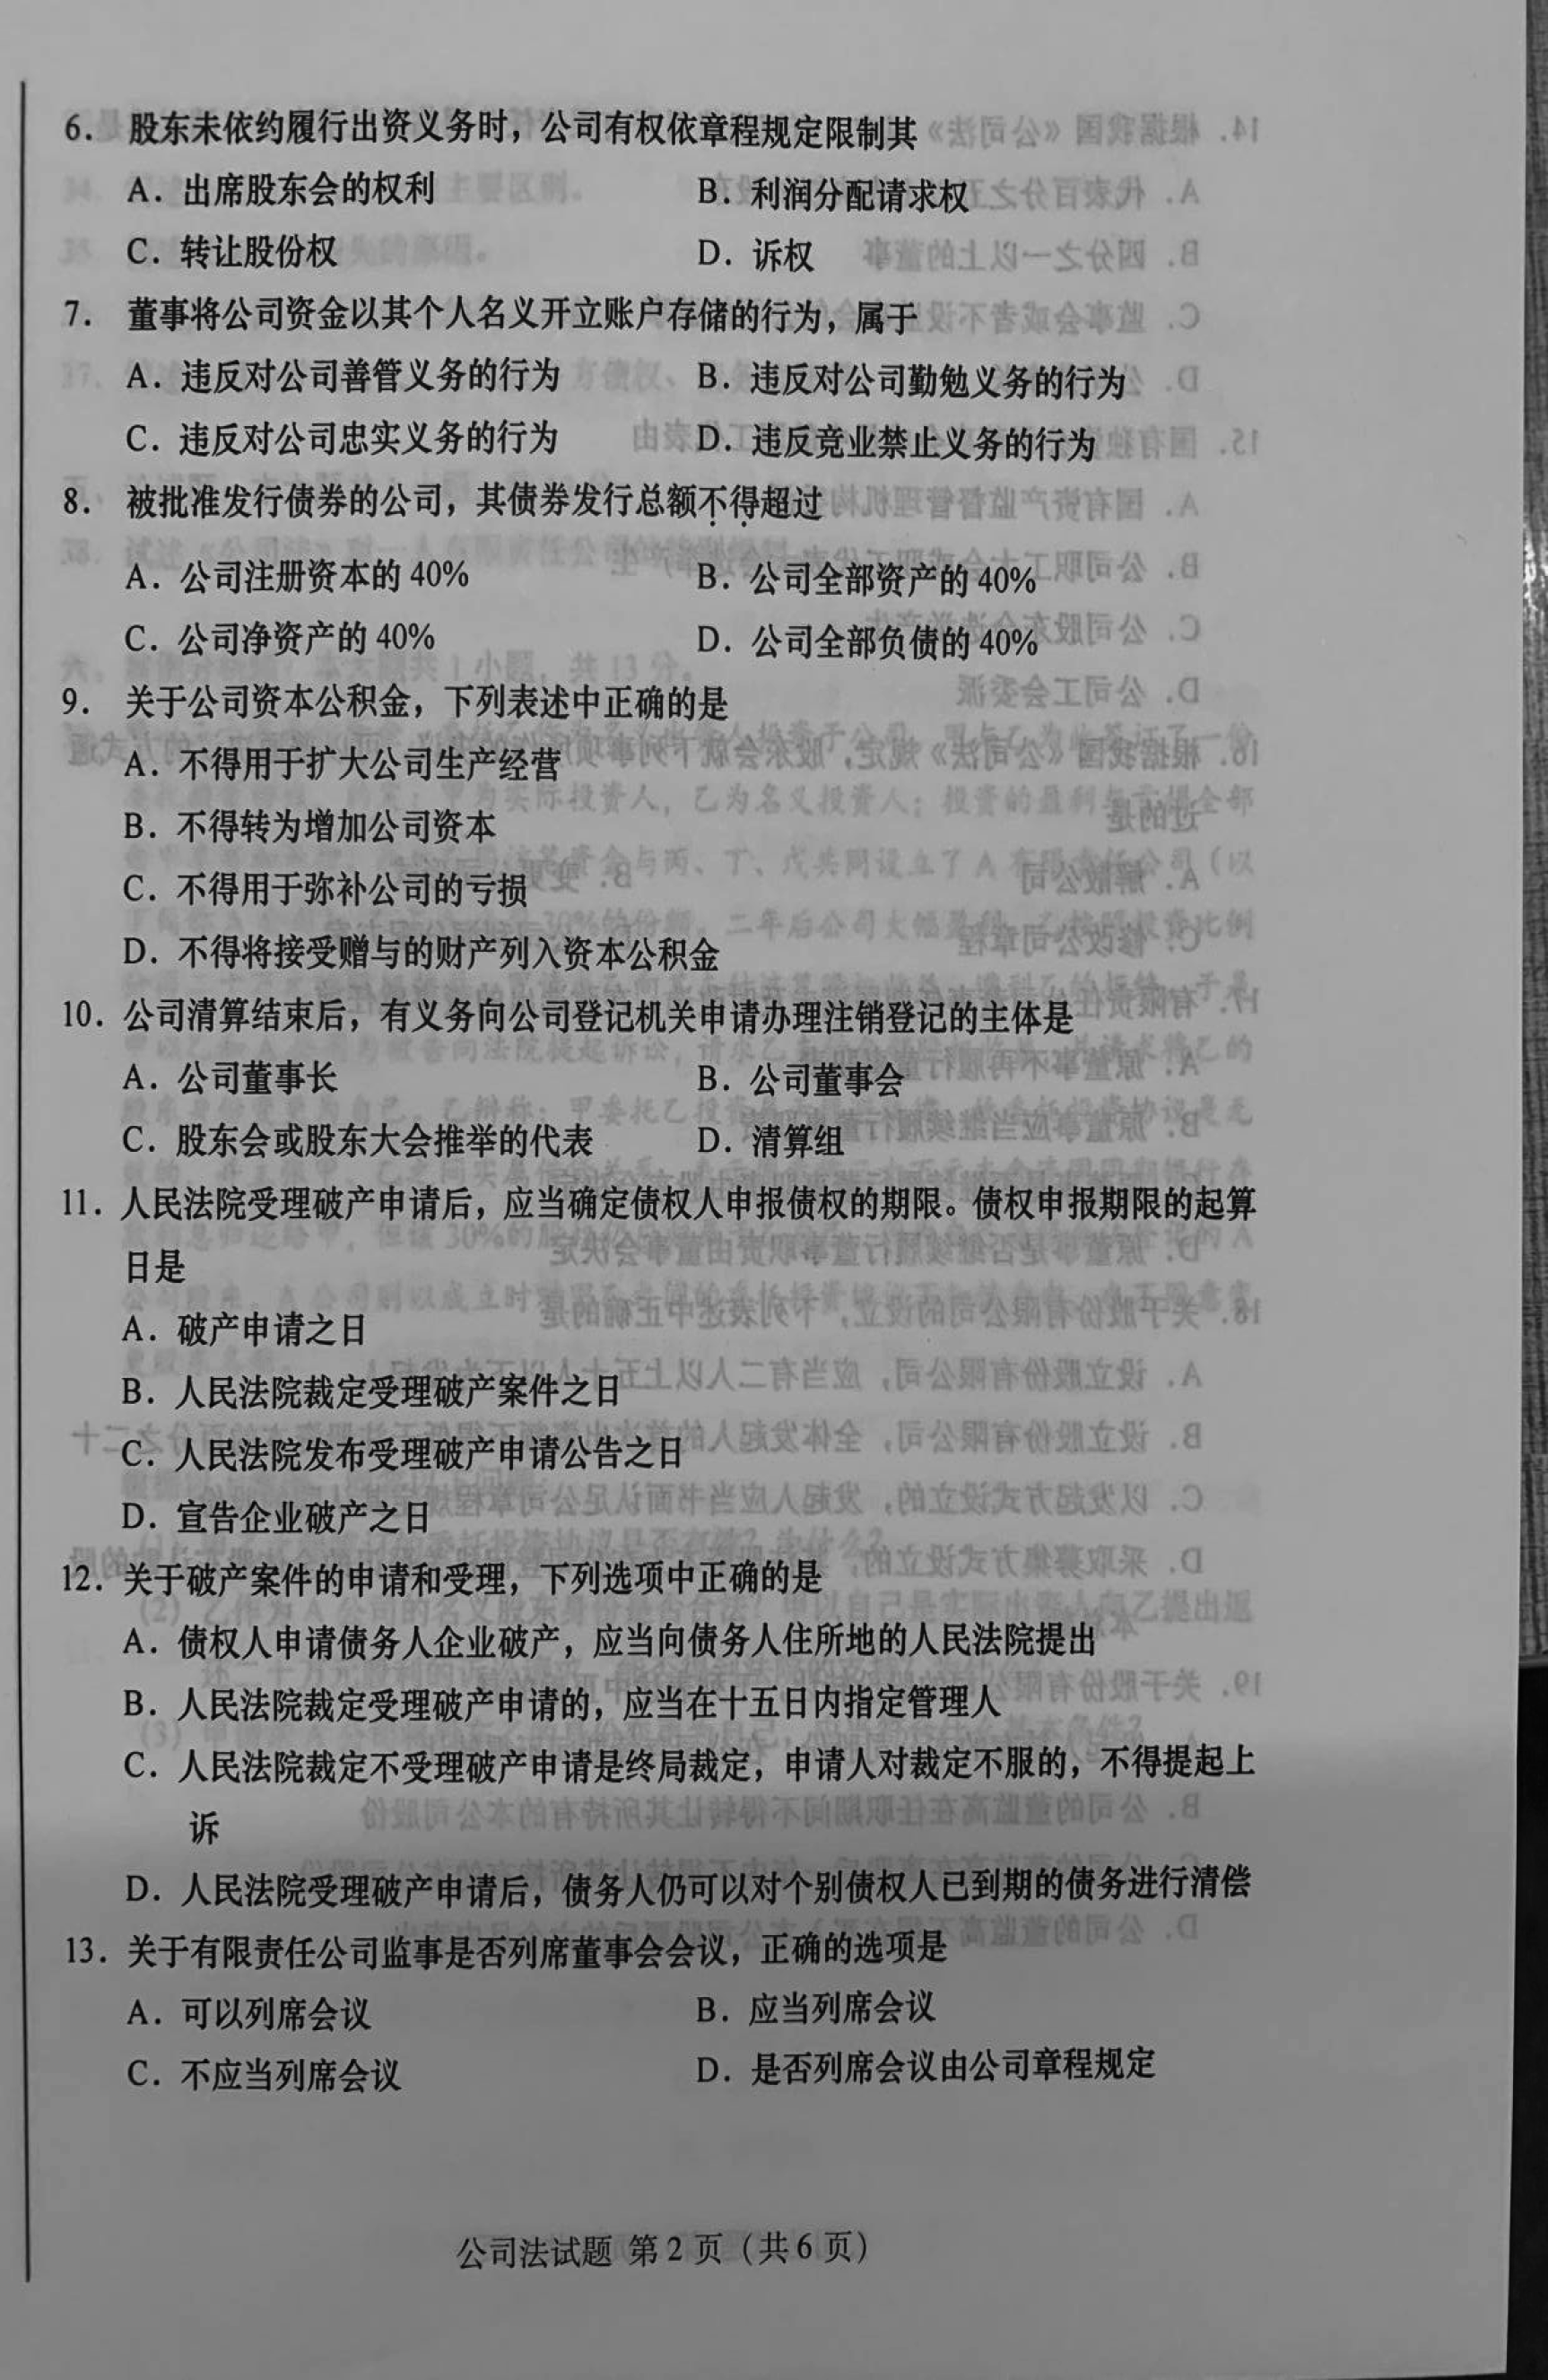 2019年10月贵州省自学考试《公司法》00227历年真题及答案